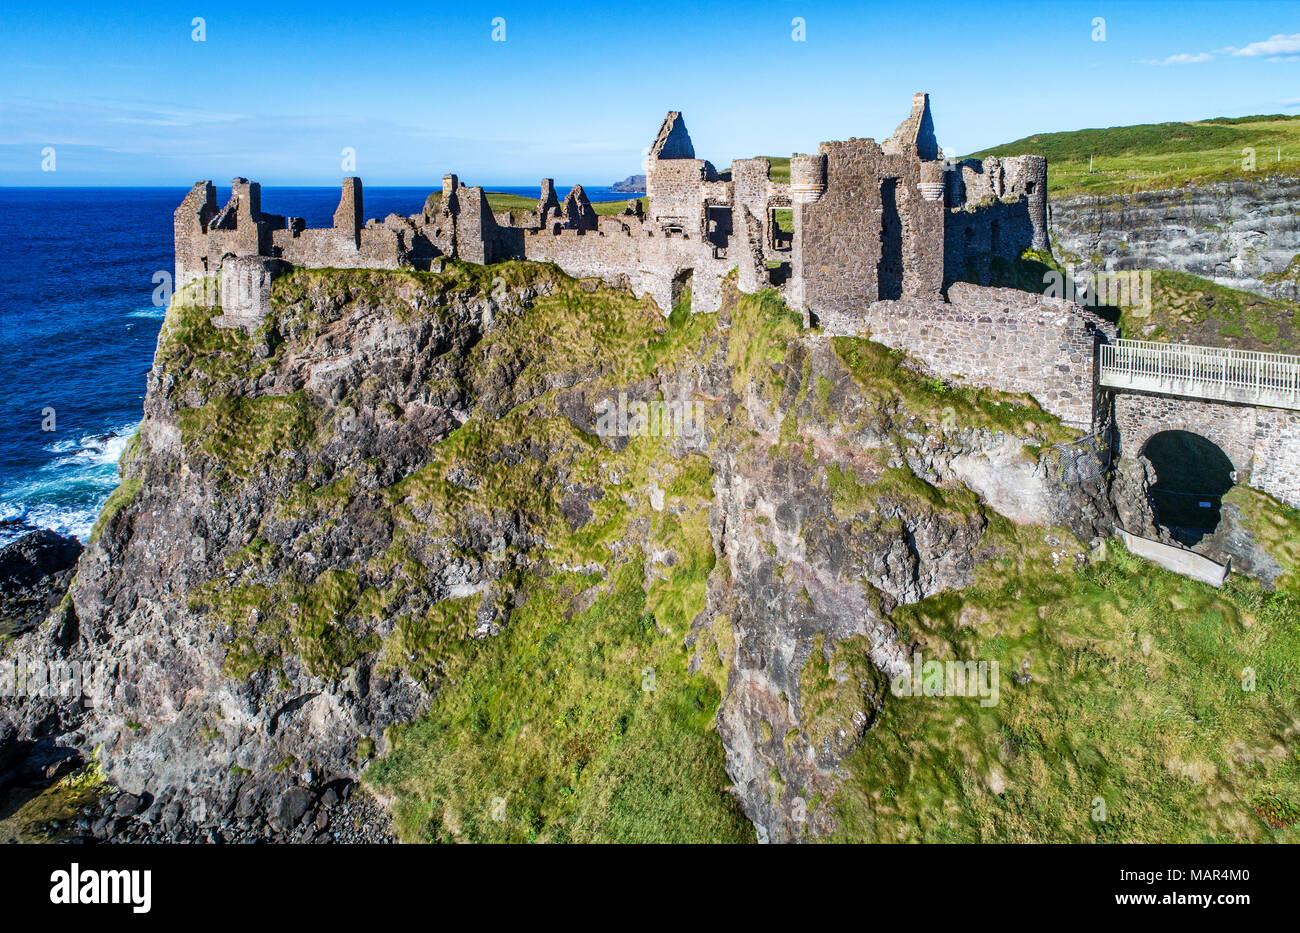 Die Ruinen der mittelalterlichen Dunluce Castle, Klippen, Buchten und Halbinseln. Der nördlichen Küste des County Antrim, Nordirland, Großbritannien. Luftaufnahme. Stockfoto